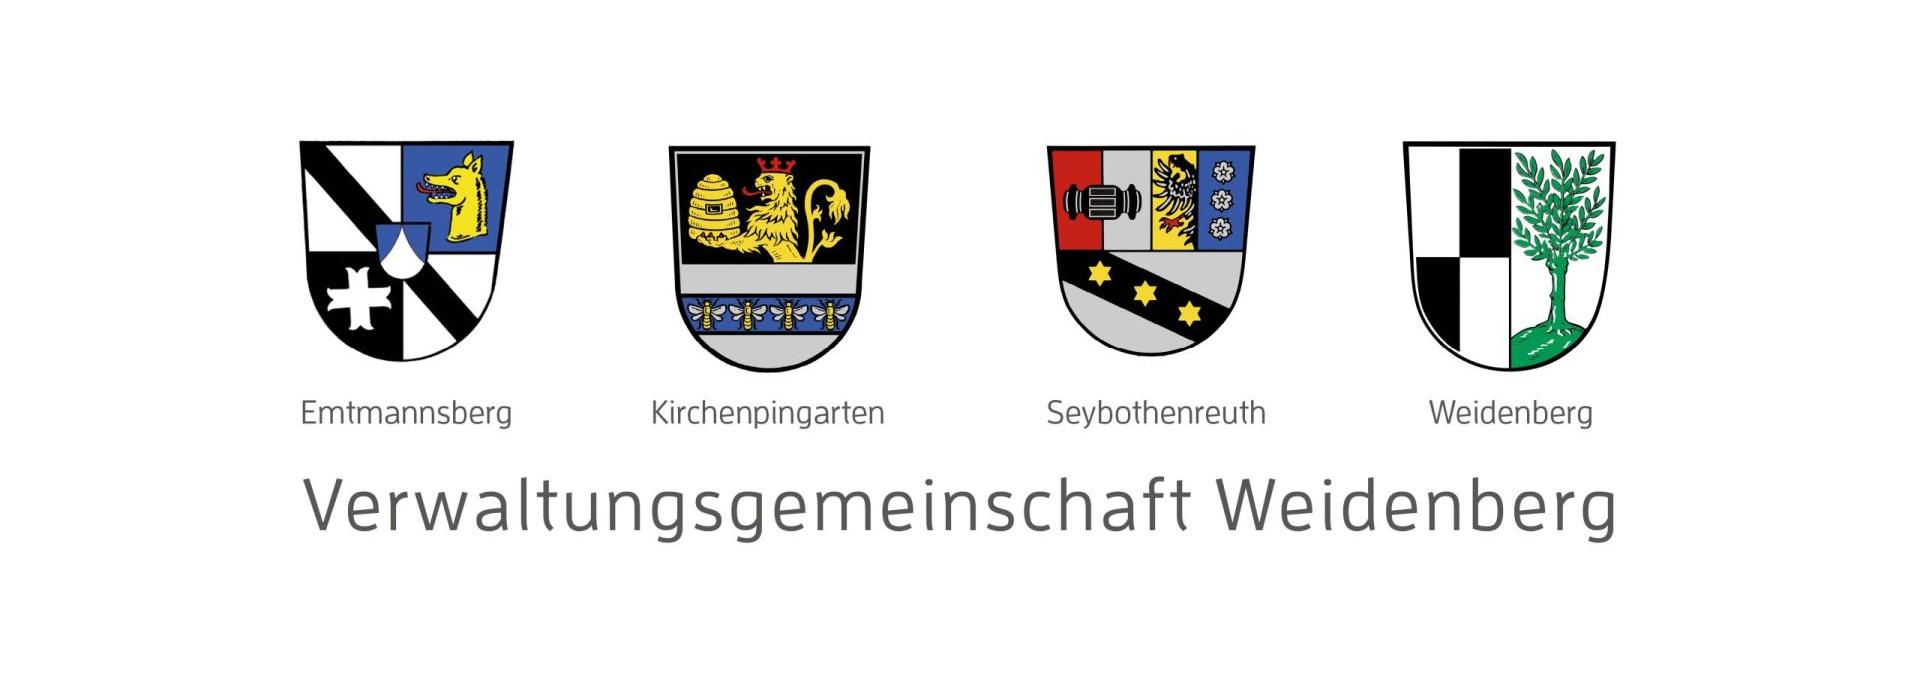 Die vier Wappen der Mitgliedsgemeinden der Verwaltungsgemeinschaft Weidenberg